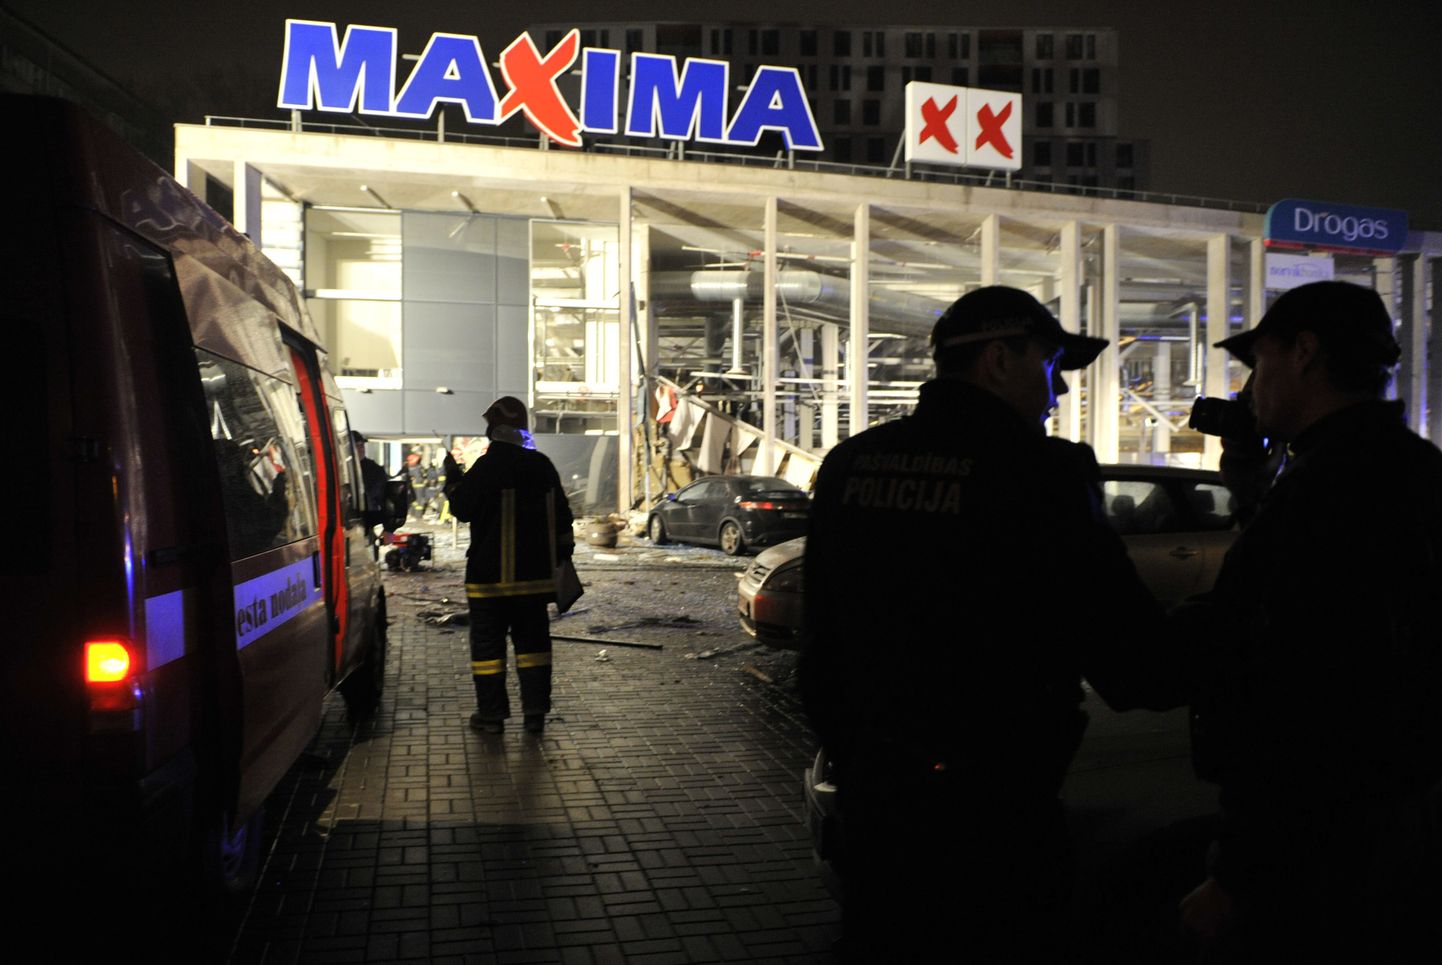 Lätlased on tundlikud igasuguste Maximaga seotud probleemide osas seoses ohvriterohke õnnetusega Riia Maximas 21. novembril 2013.